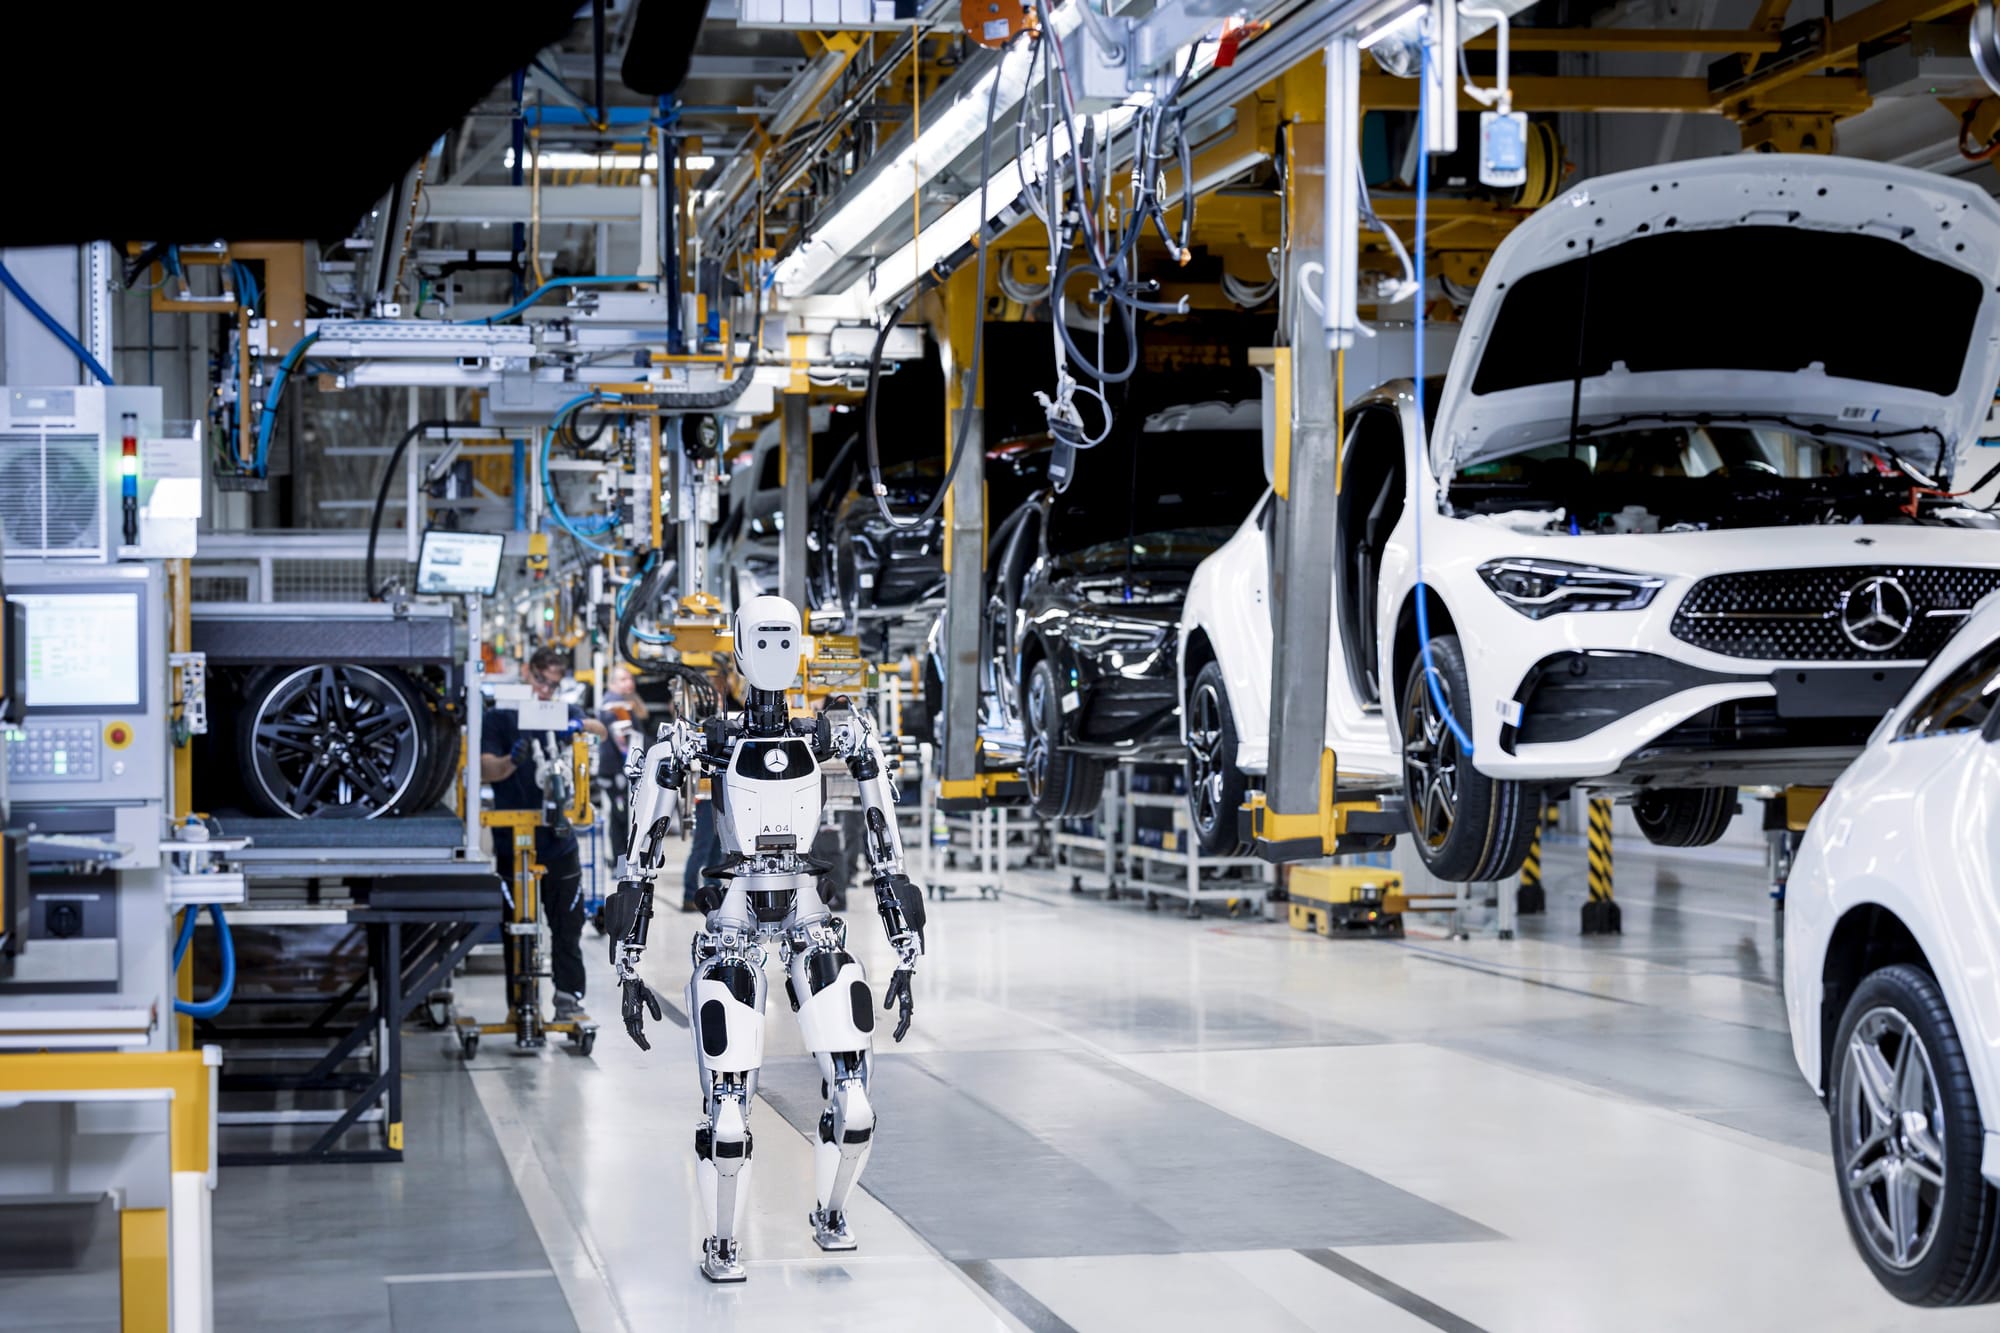 Роботы в комбинезонах: у Mercedes появились новые «коллеги» для рабочих на заводе